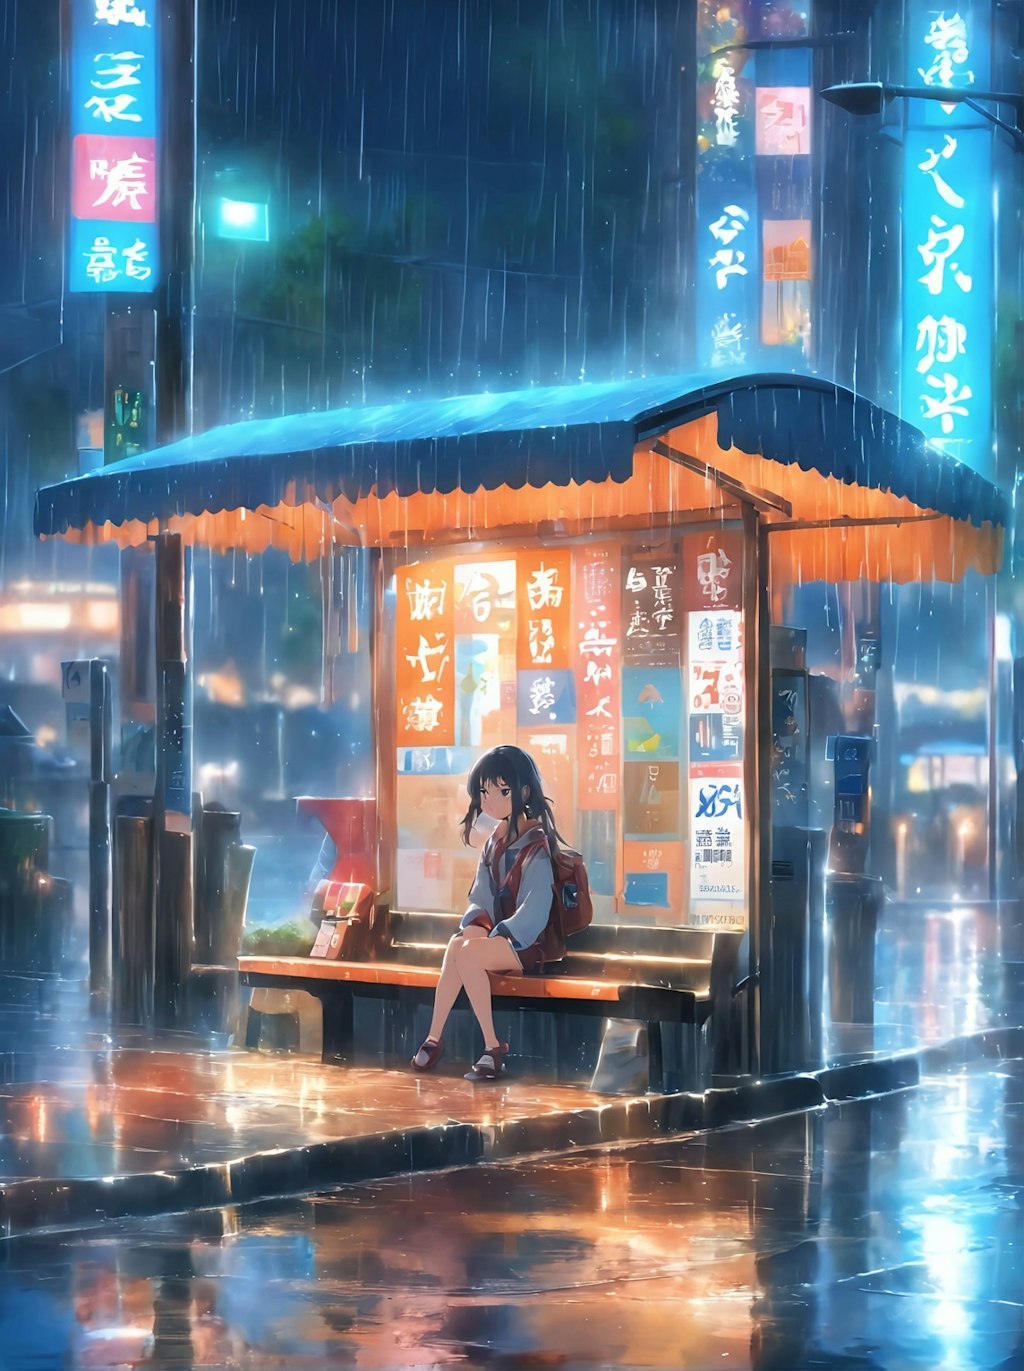 雨の日のバス停